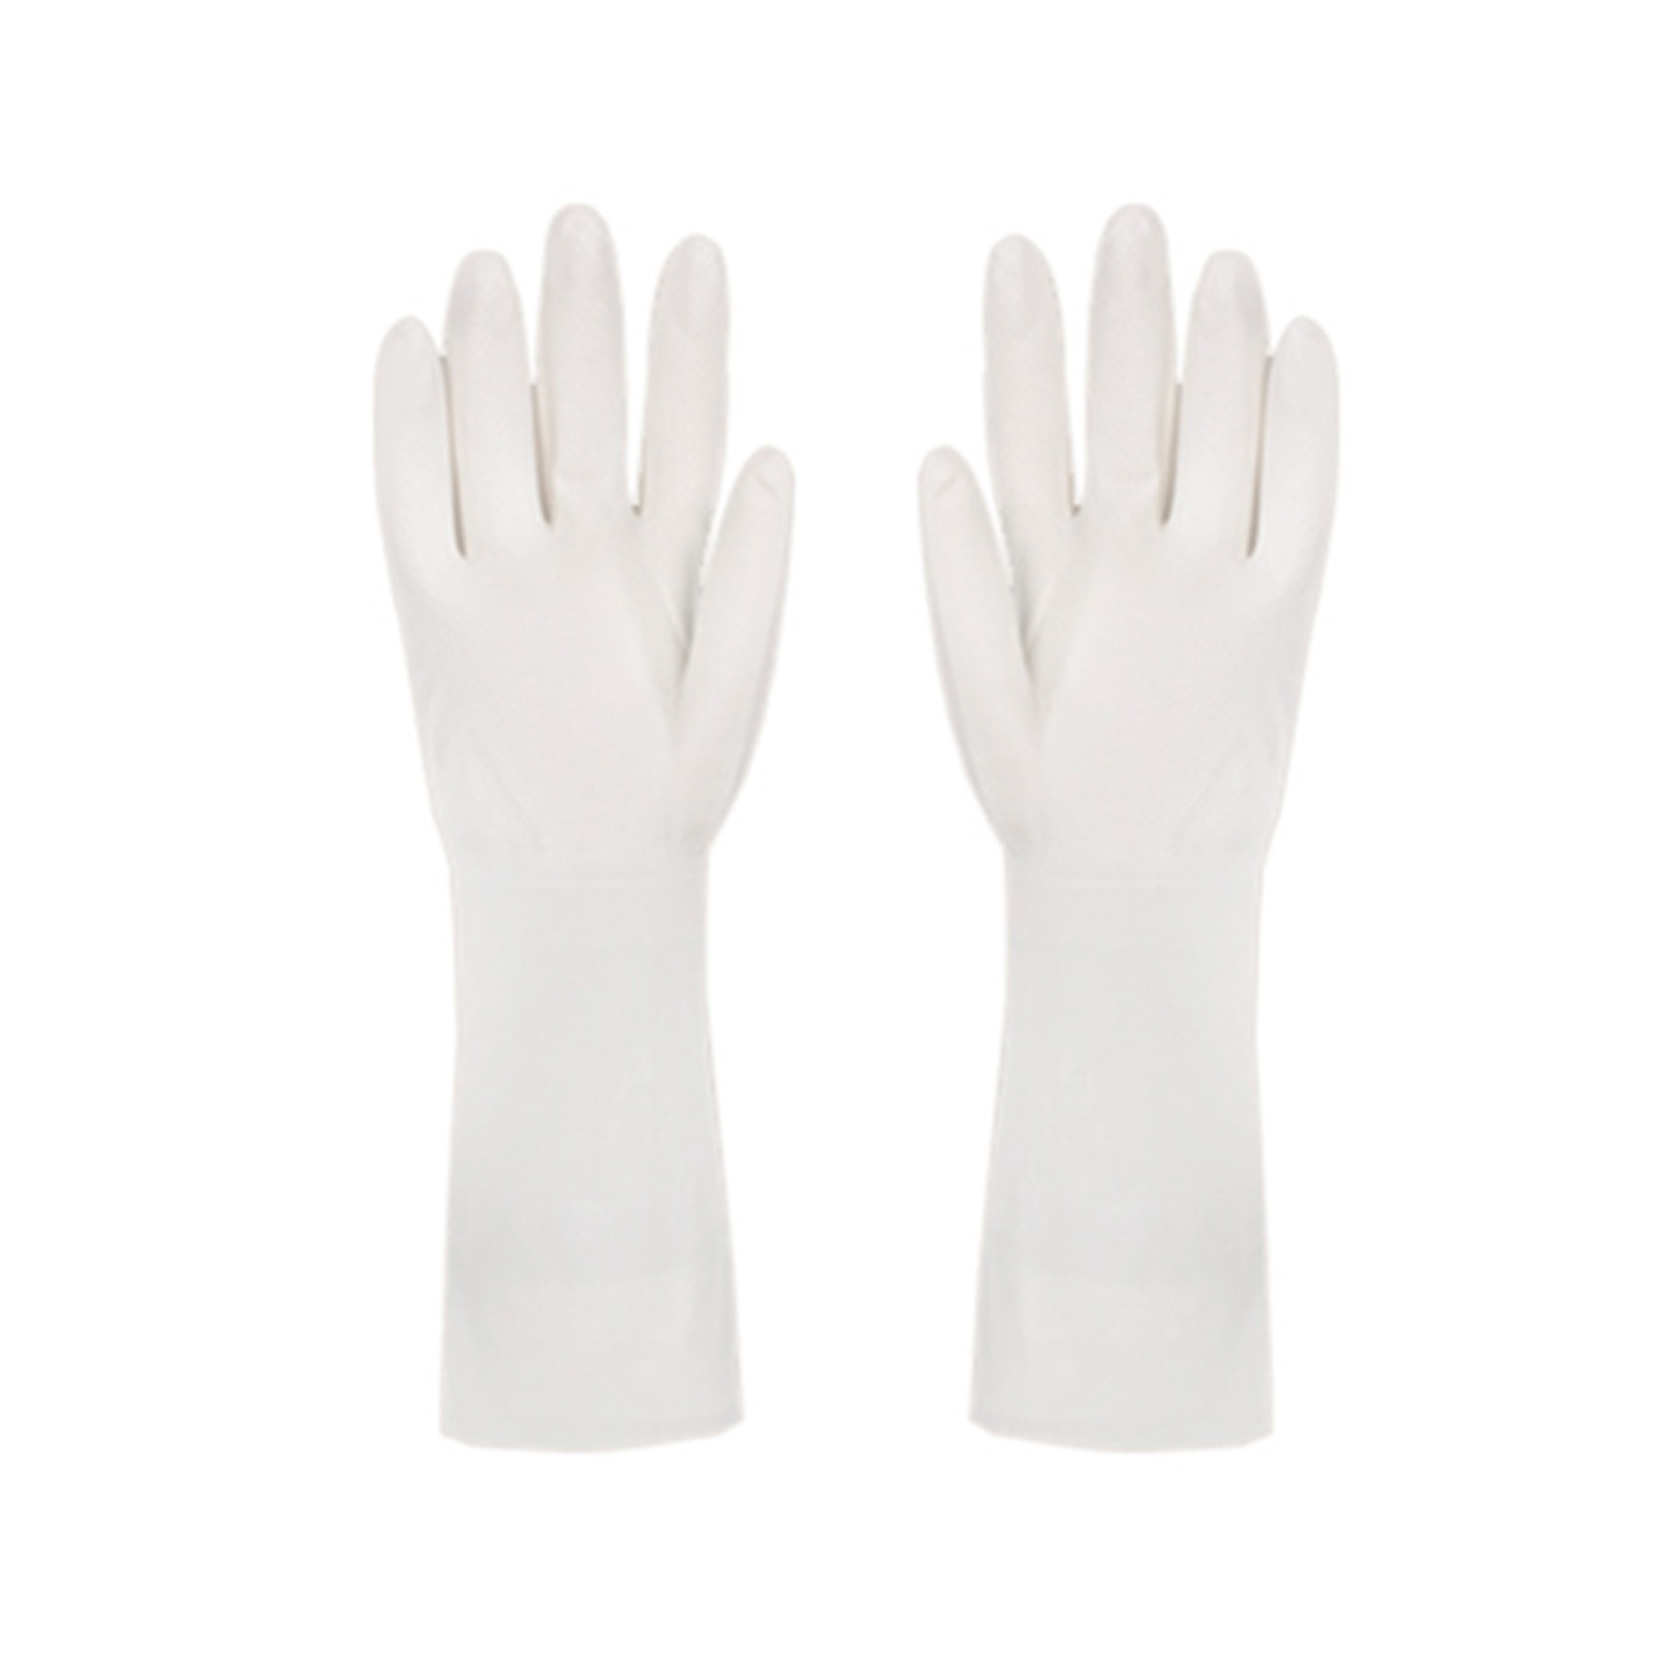 Gumowe rękawice nitrylowe Wielokrotnego użytku Czyszczenie w domu do zmywania naczyń w kuchni